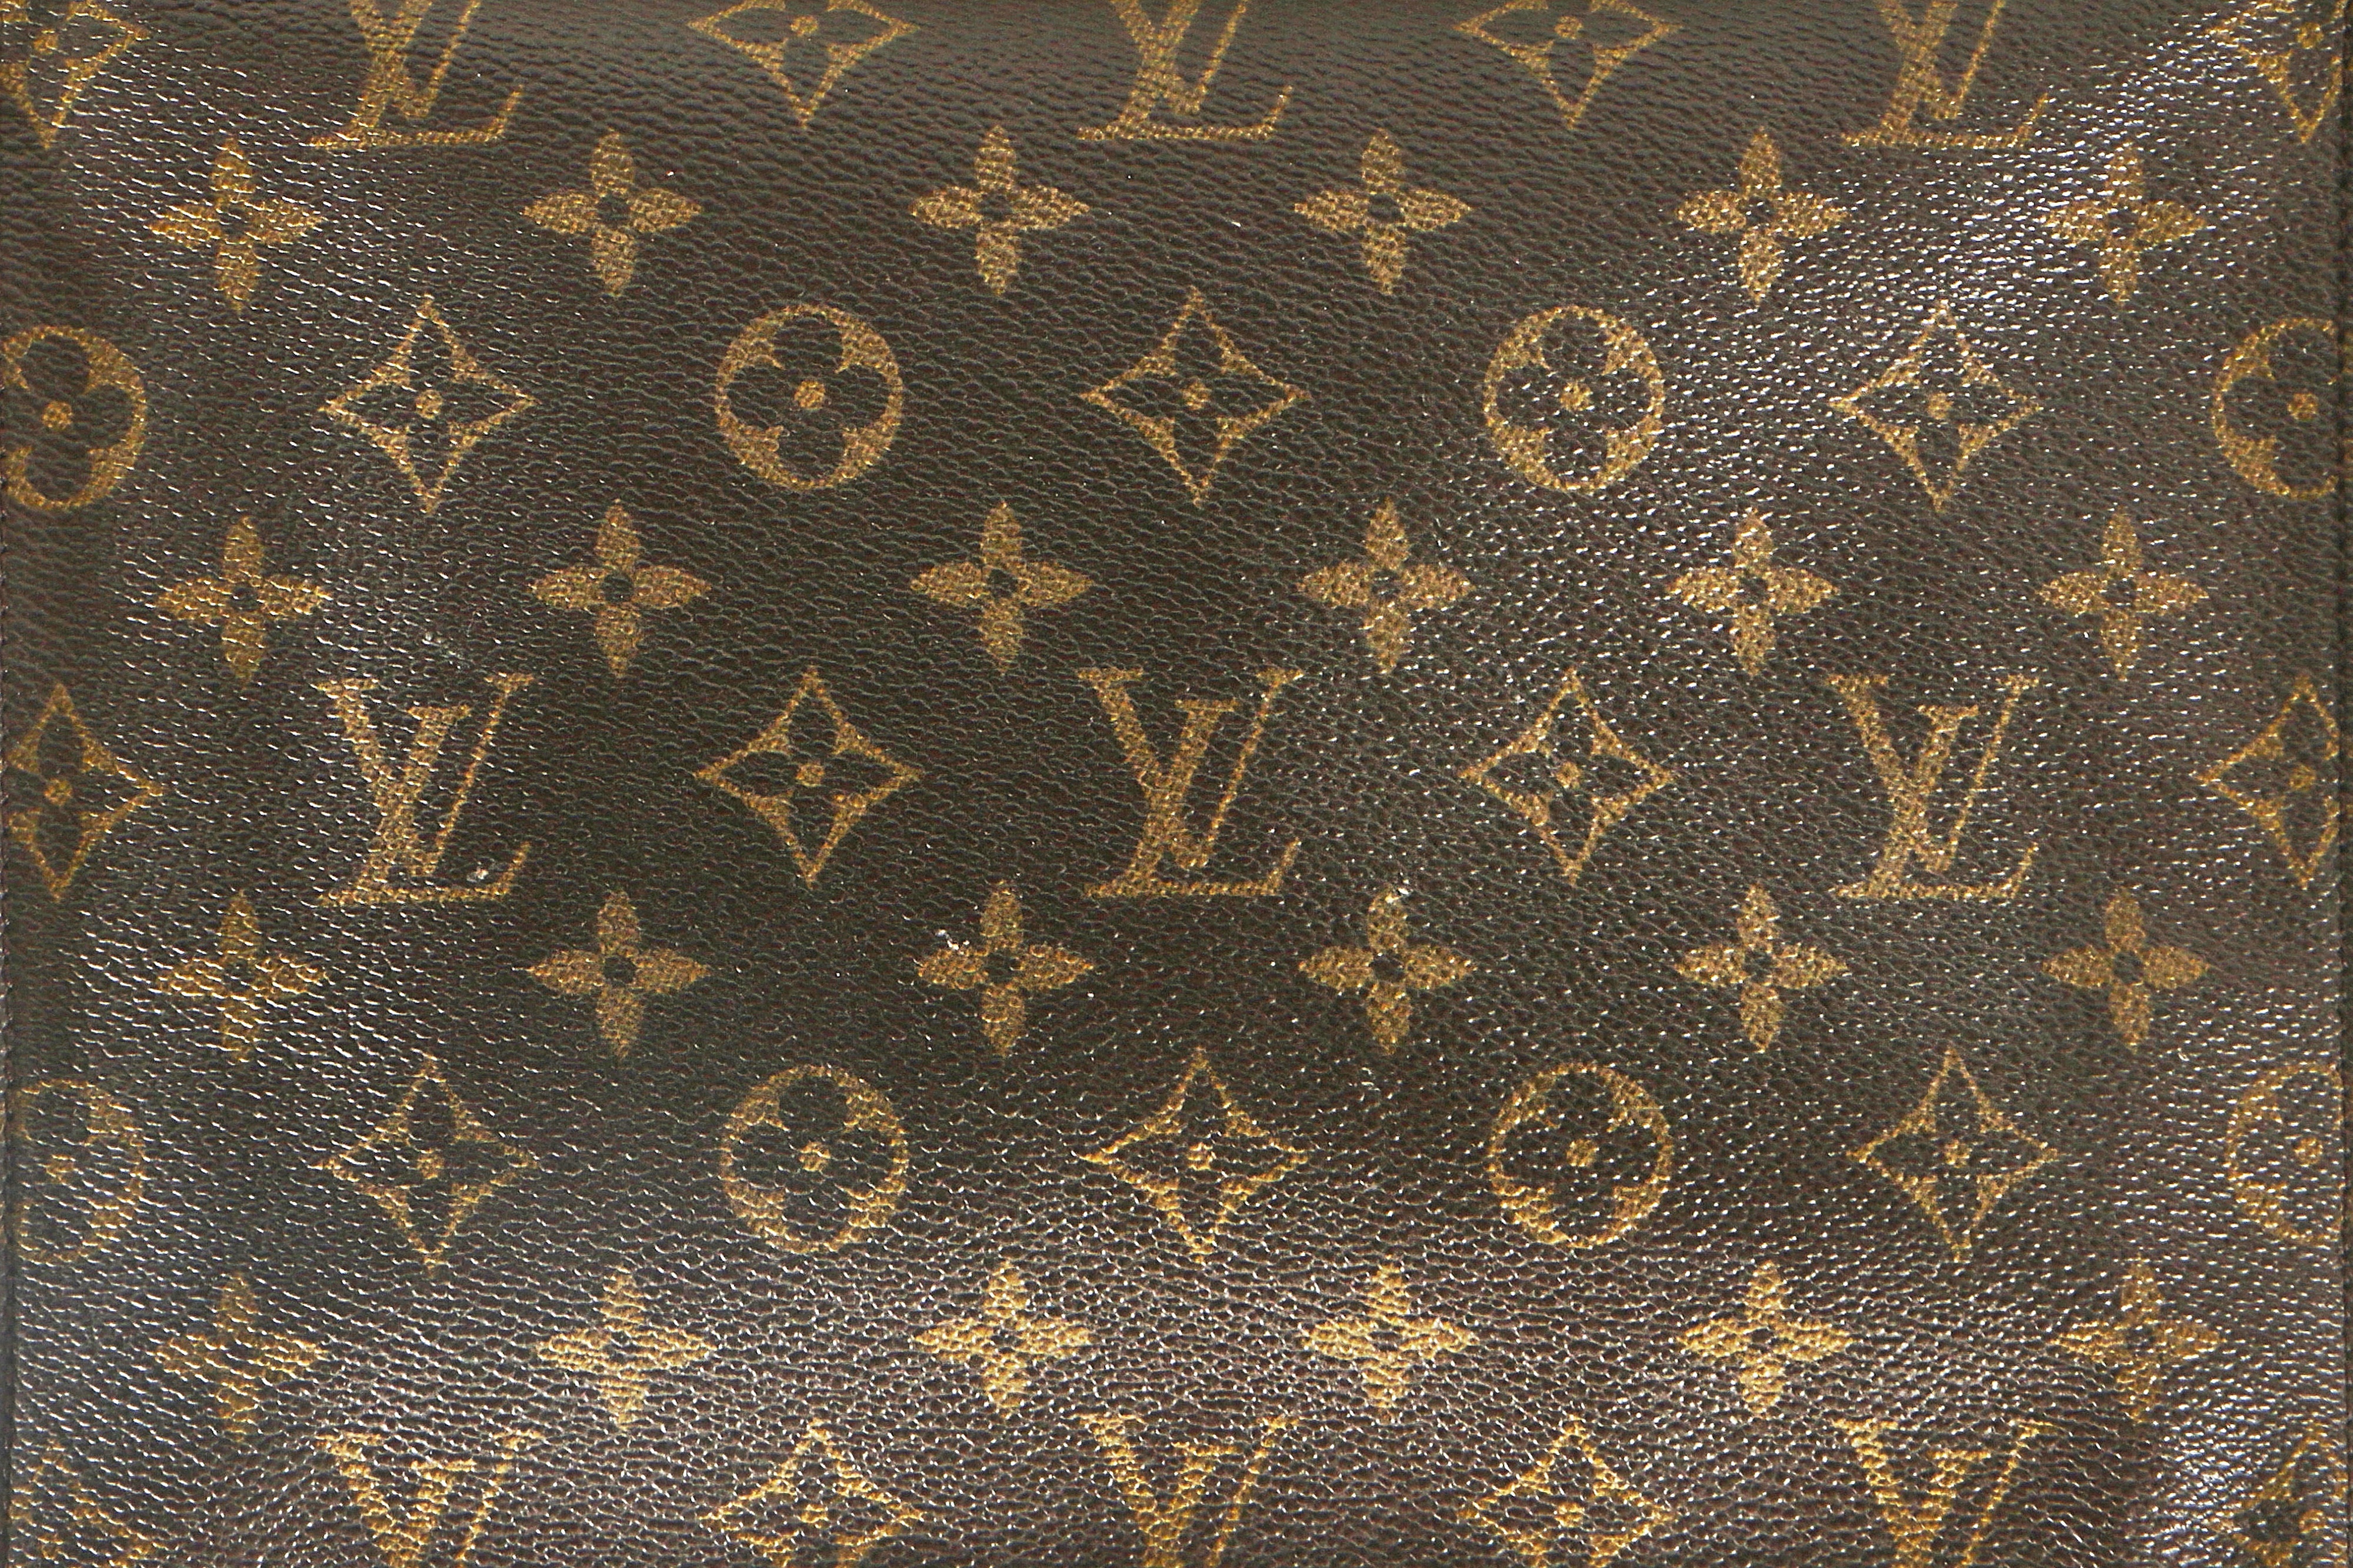 At Auction: Faux Louis Vuitton Monogram Sac Plat & Document